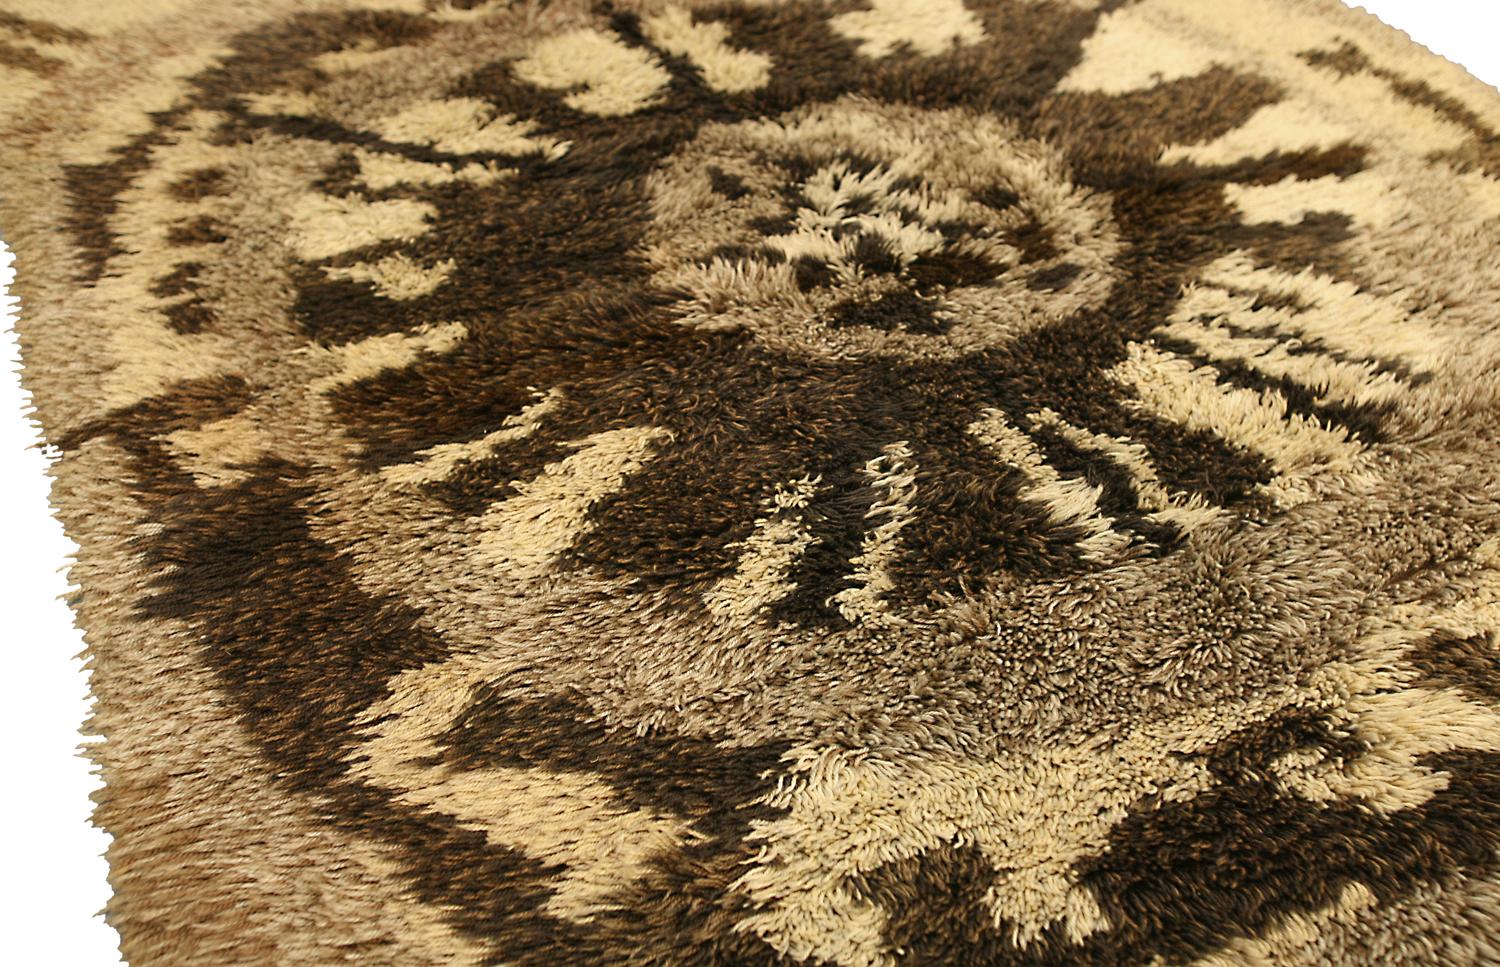 Ce tapis est une œuvre d'art qui égayera n'importe quelle pièce. Le design abstrait et audacieux attire le regard et est unique, et les couleurs sont gaies et vives. Le tapis est fabriqué en laine de haute qualité, ce qui le rend doux et agréable à